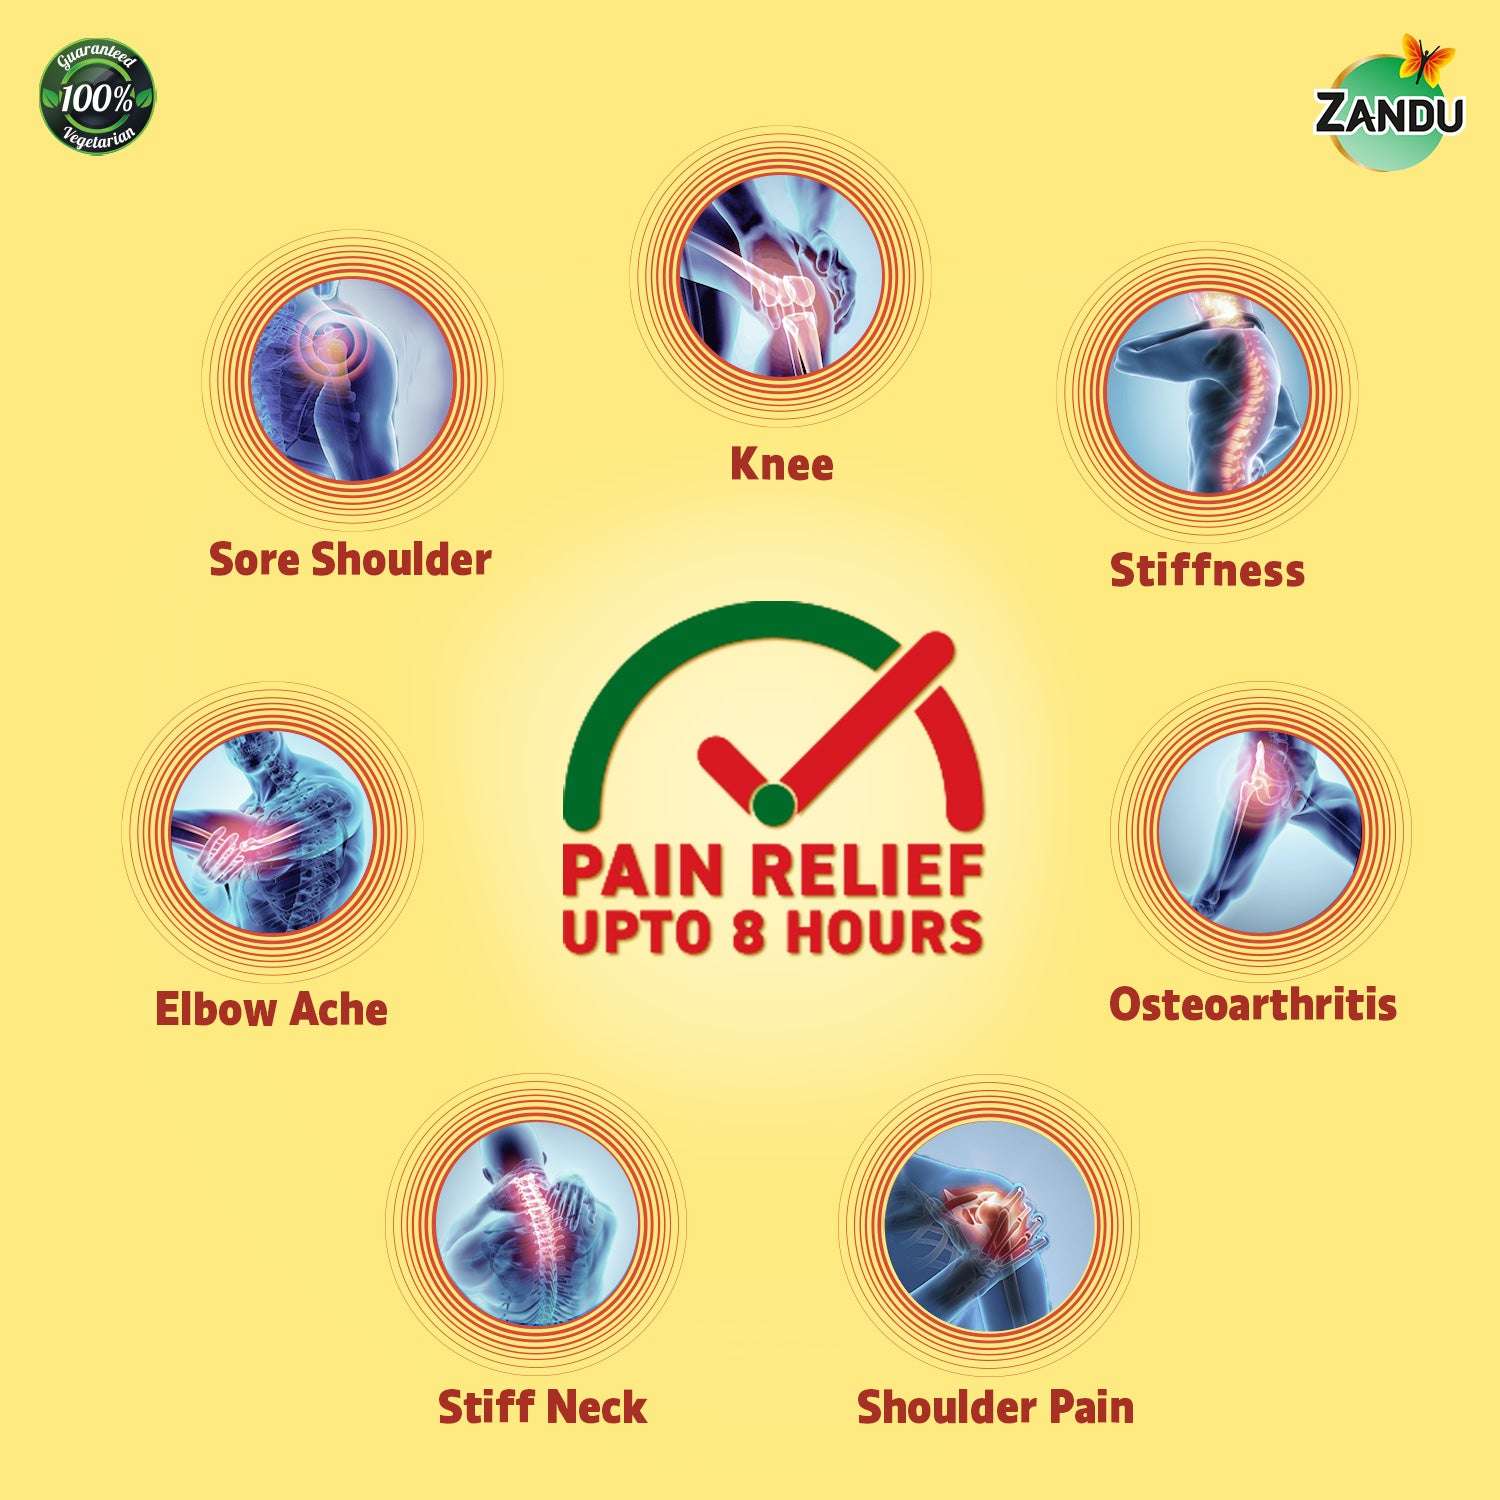 Zandu Knee Pain Patch benefits